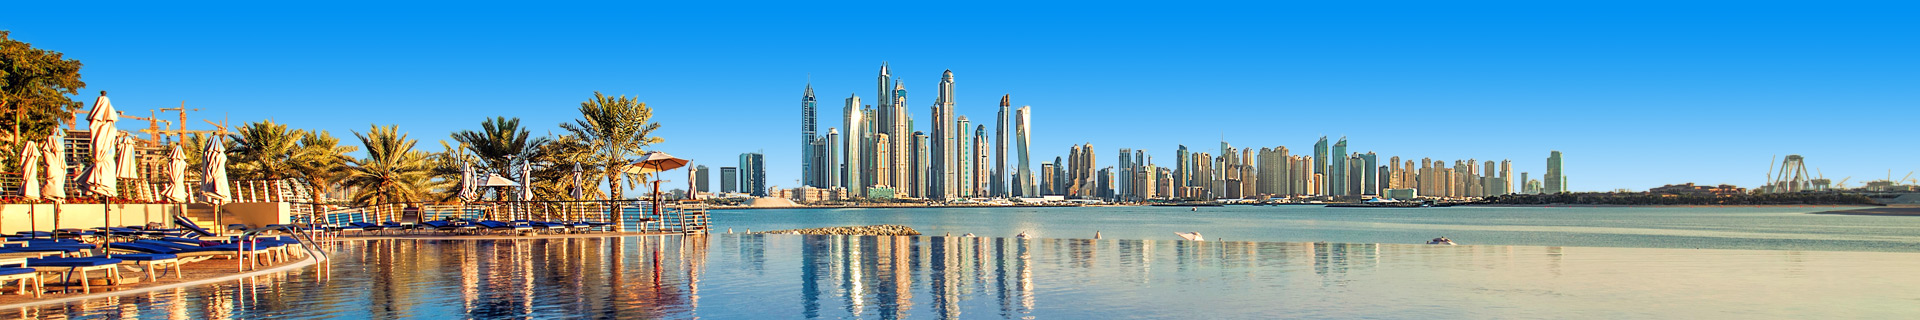 Skyline van Dubai in de Verenigde Arabische Emiraten